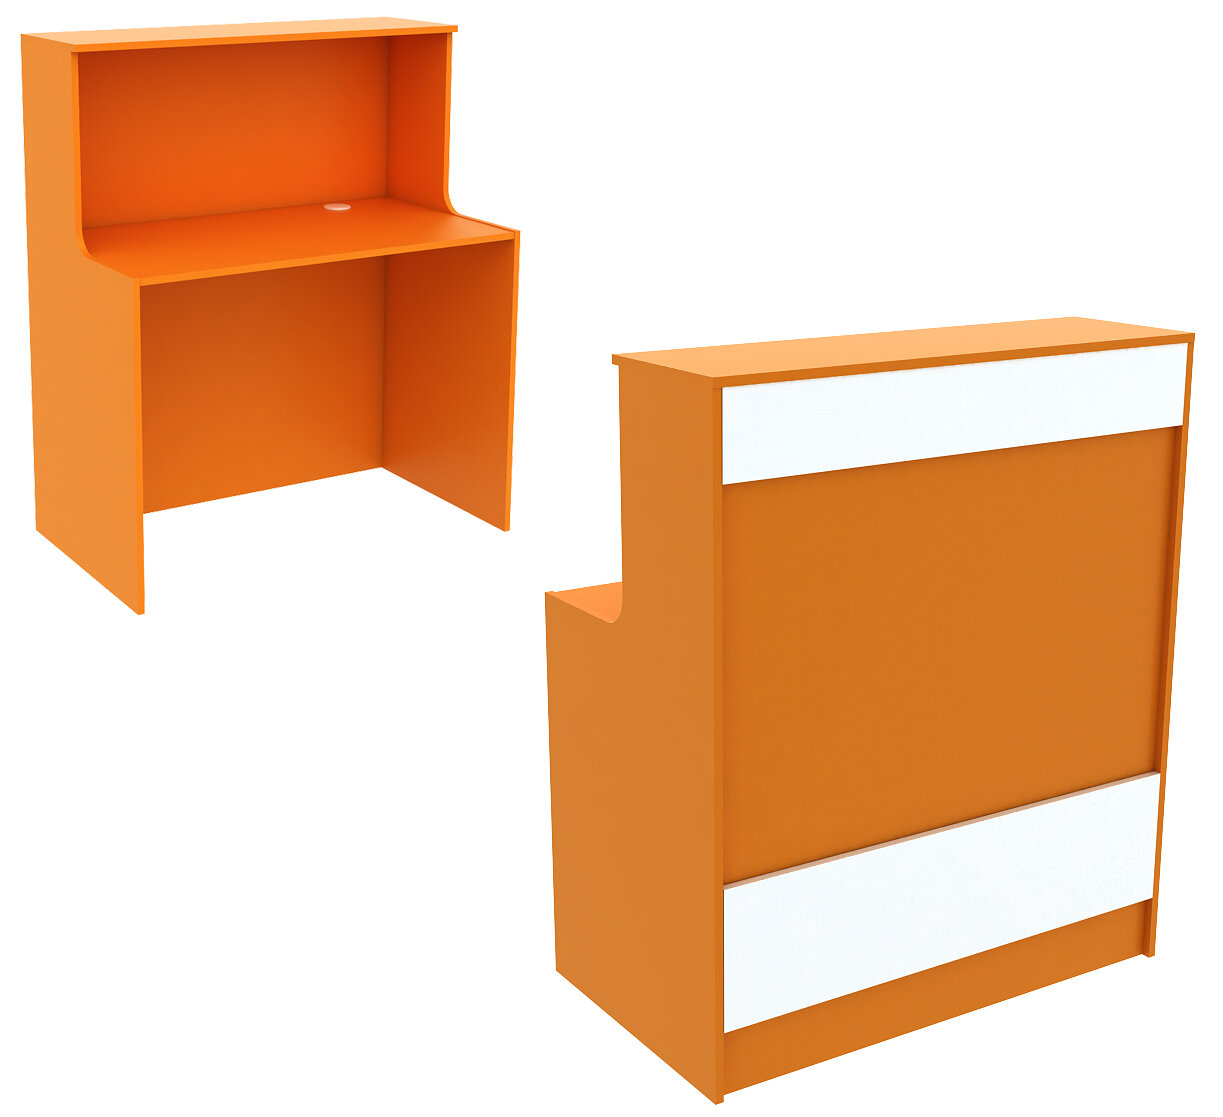 Ресепшен оранжевого цвета прямоугольный серии апельсин с фасадными панелями №1